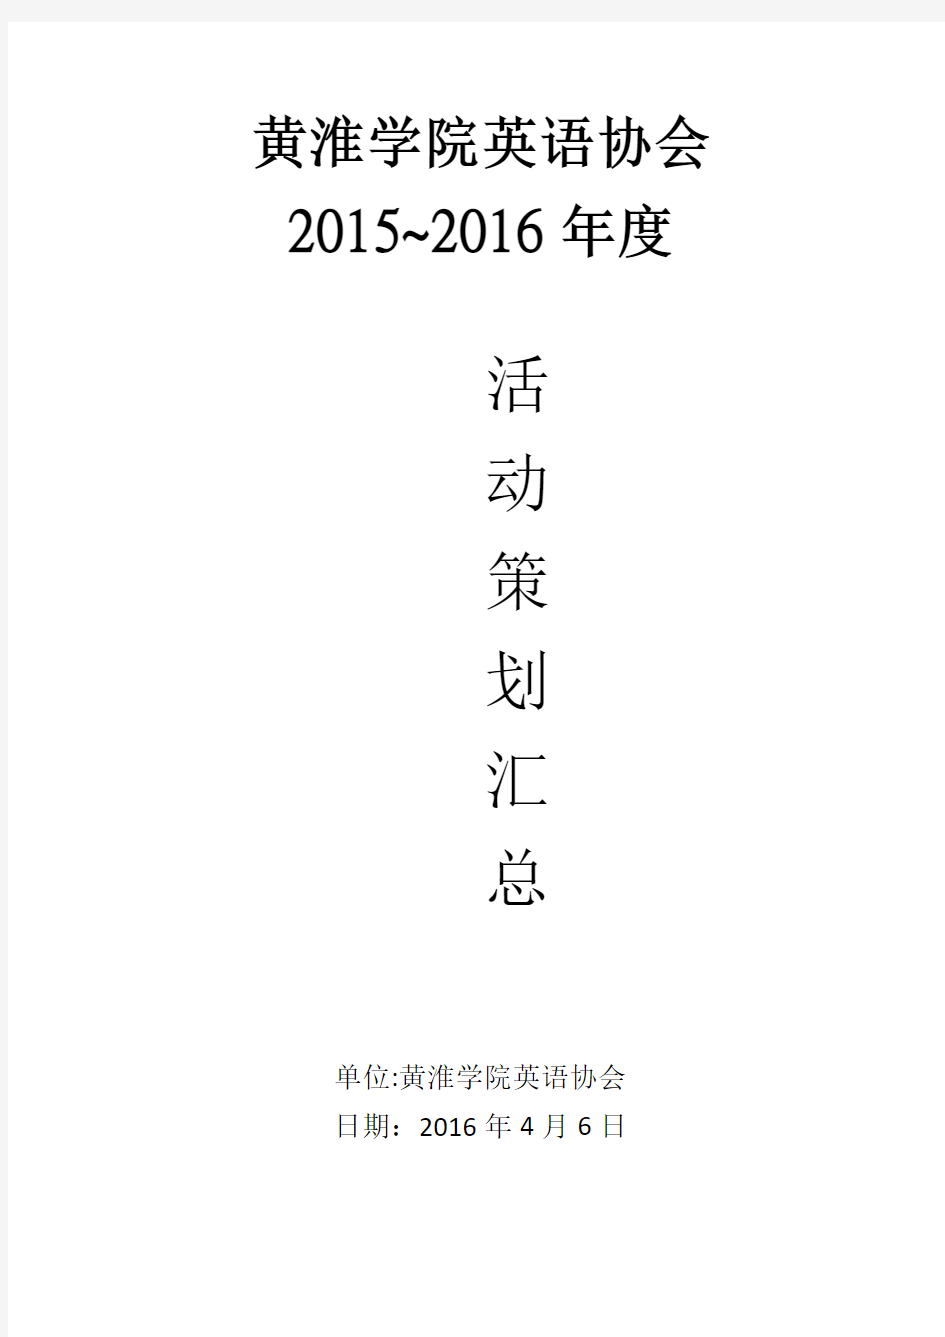 2015~2016黄淮学院英语协会 年度活动策划汇总